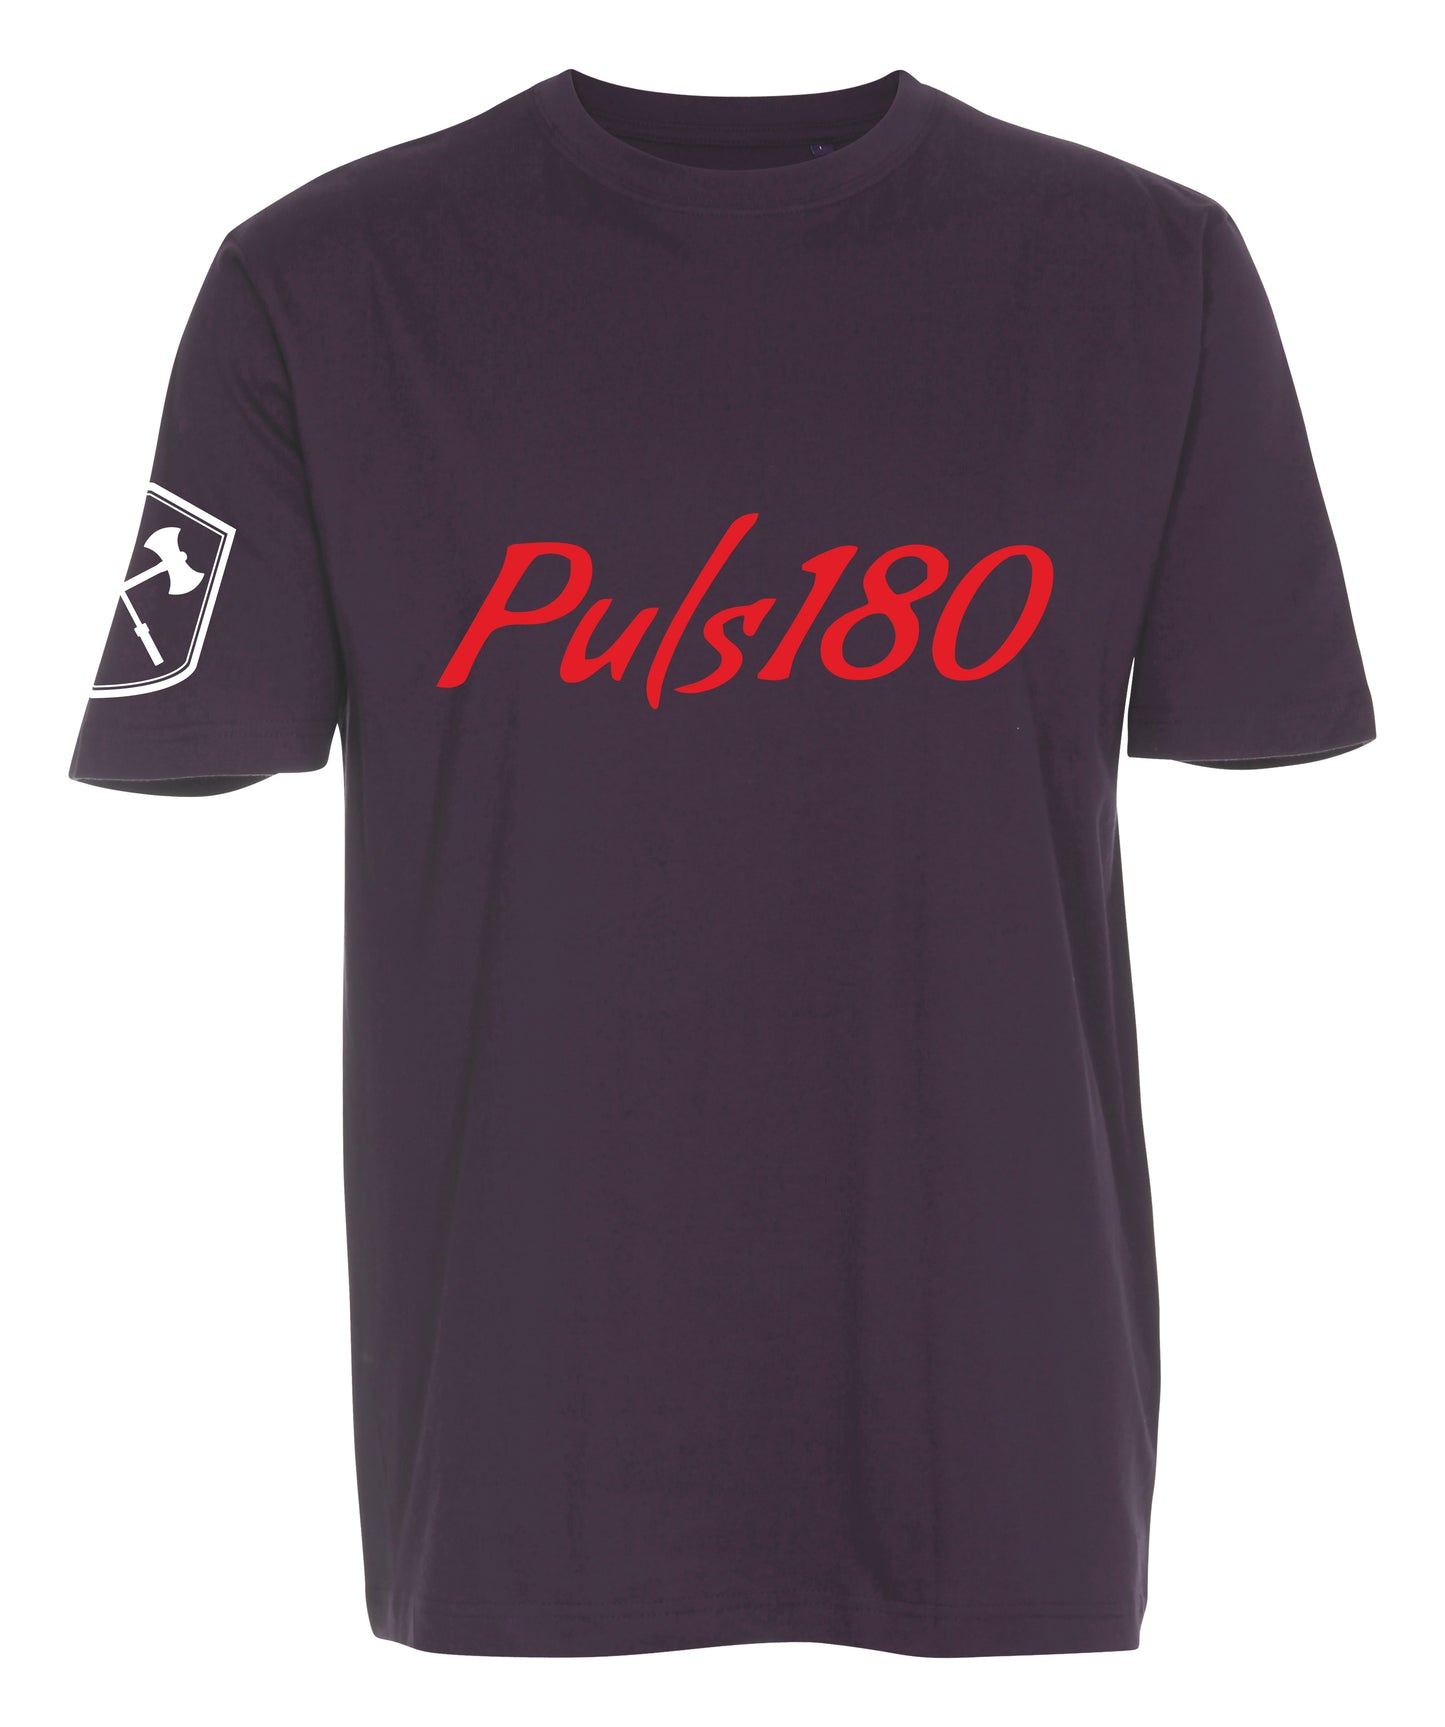 Puls180 - Herre T-shirt